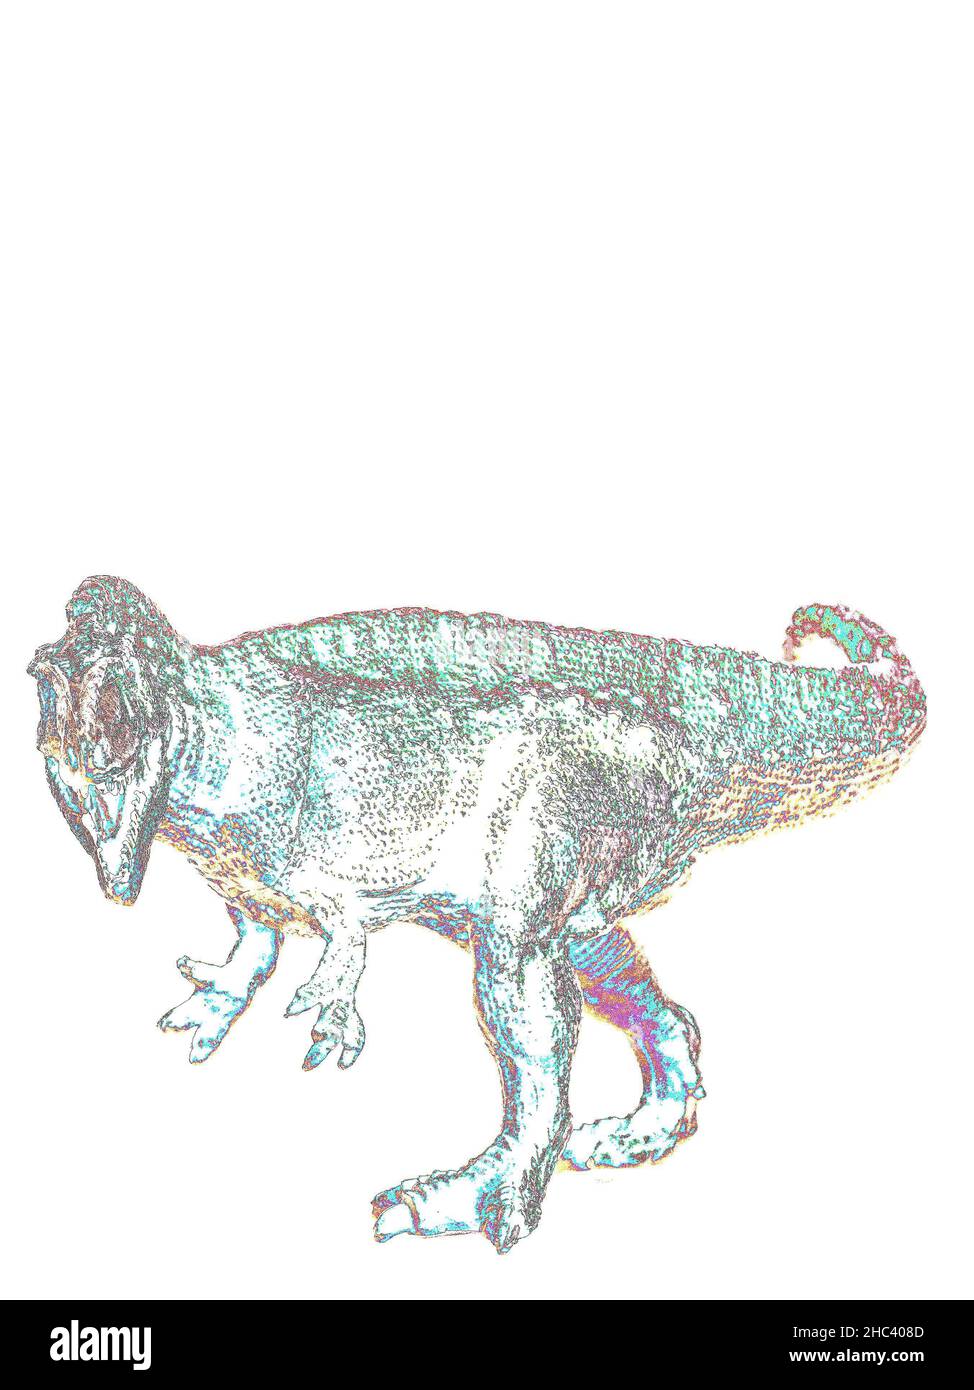 Stilisiertes Bild eines Spielzeug-Dinosauriers Stockfoto